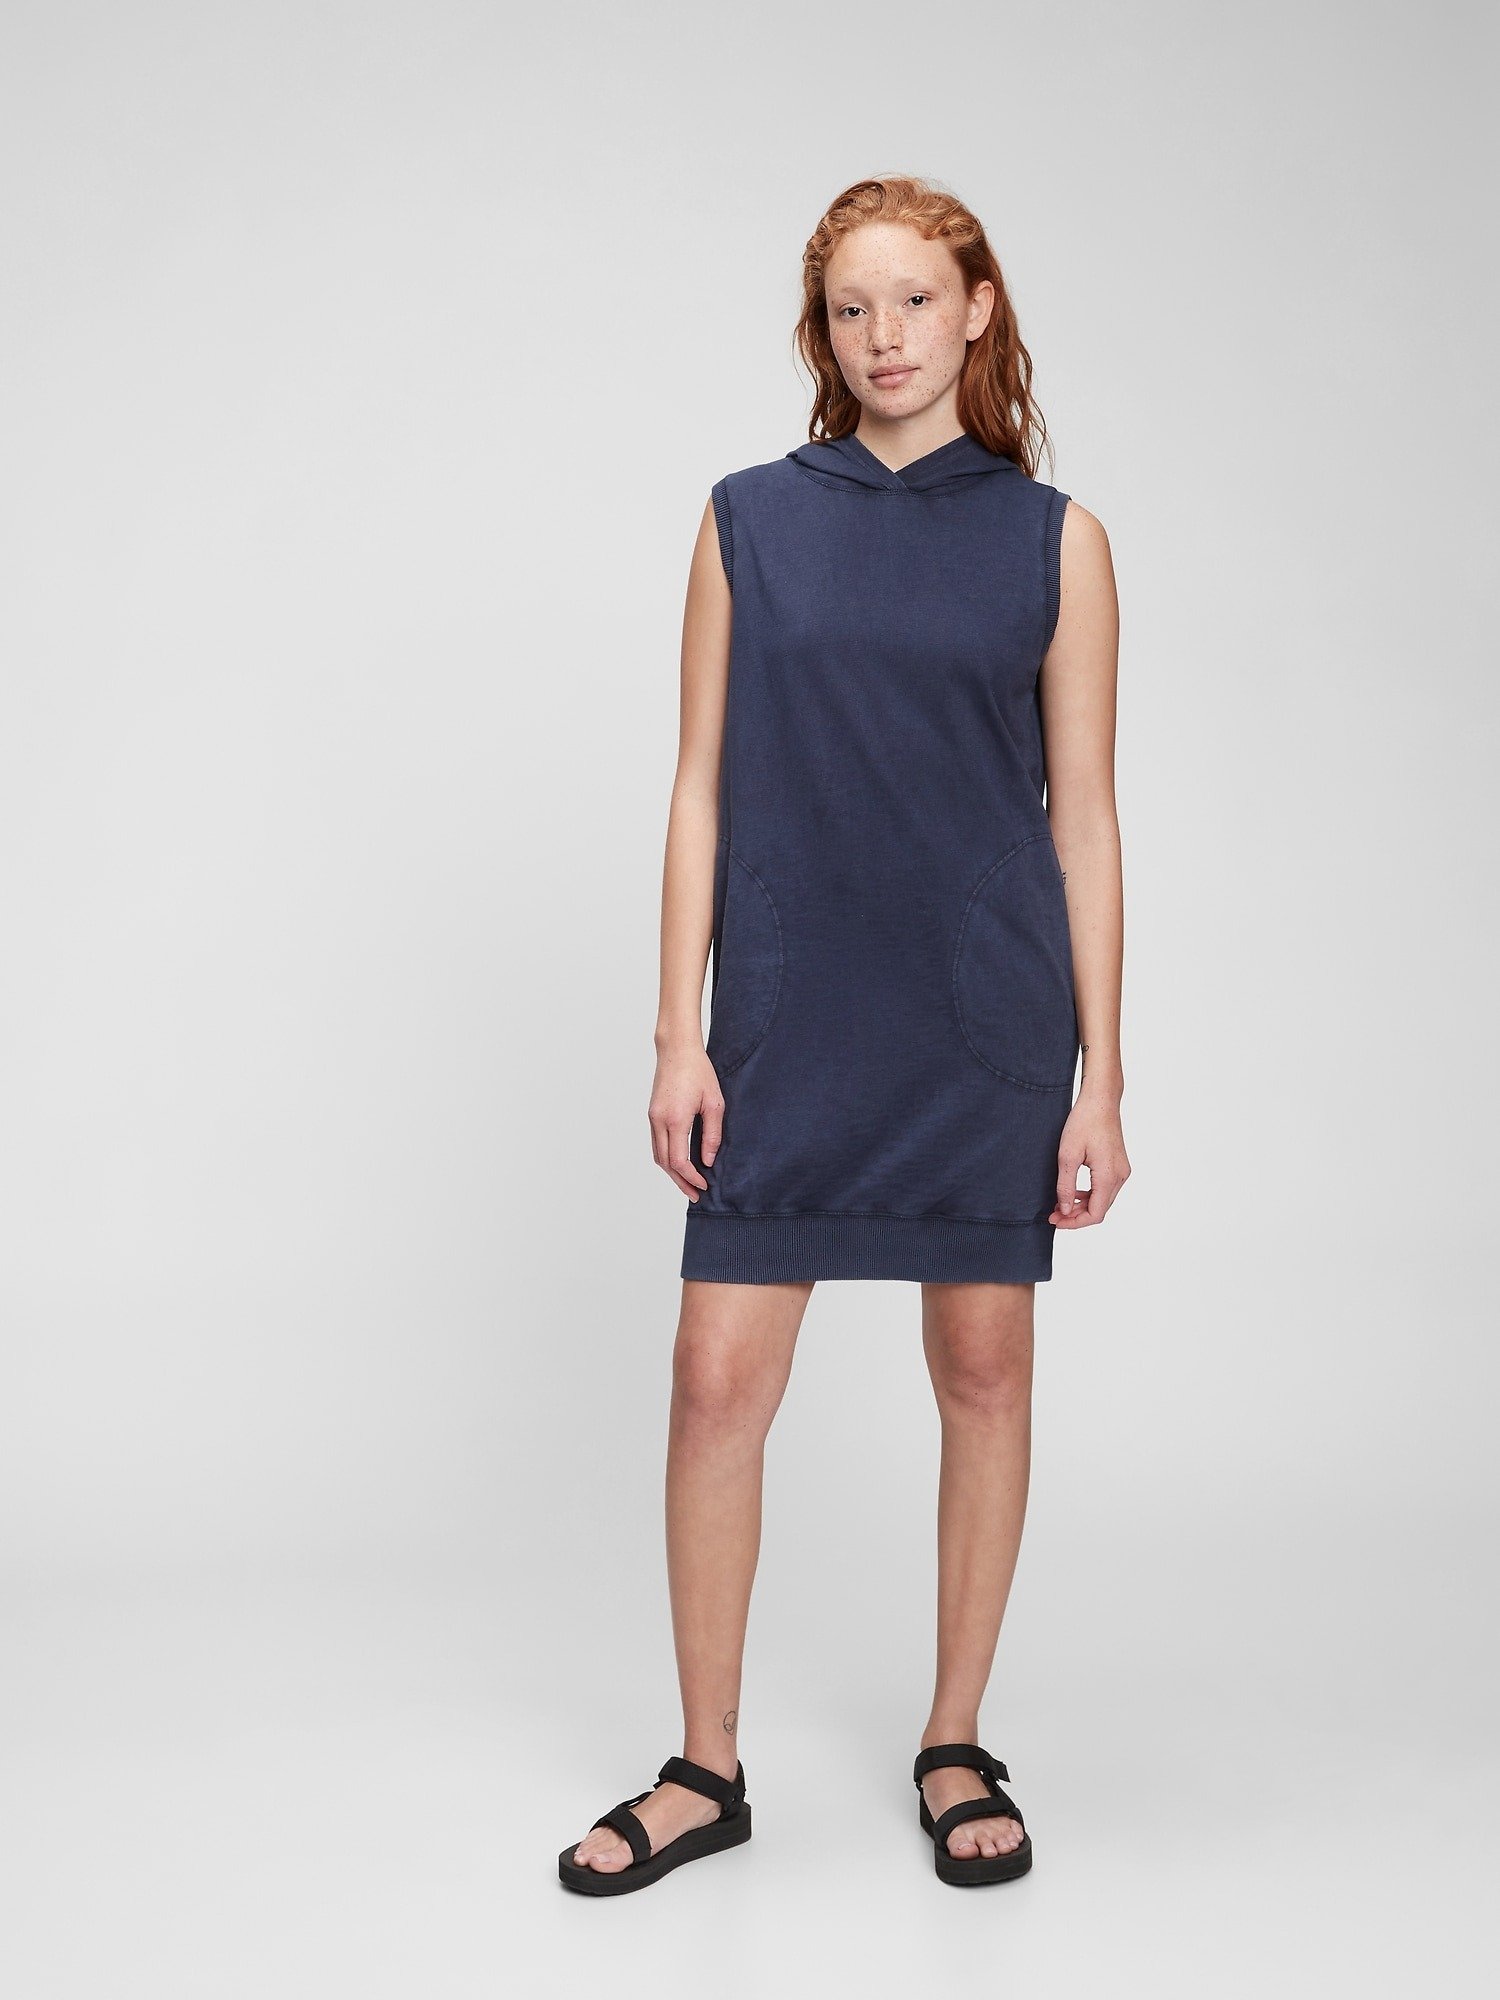 Kapüşonlu Sweatshirt Elbise product image